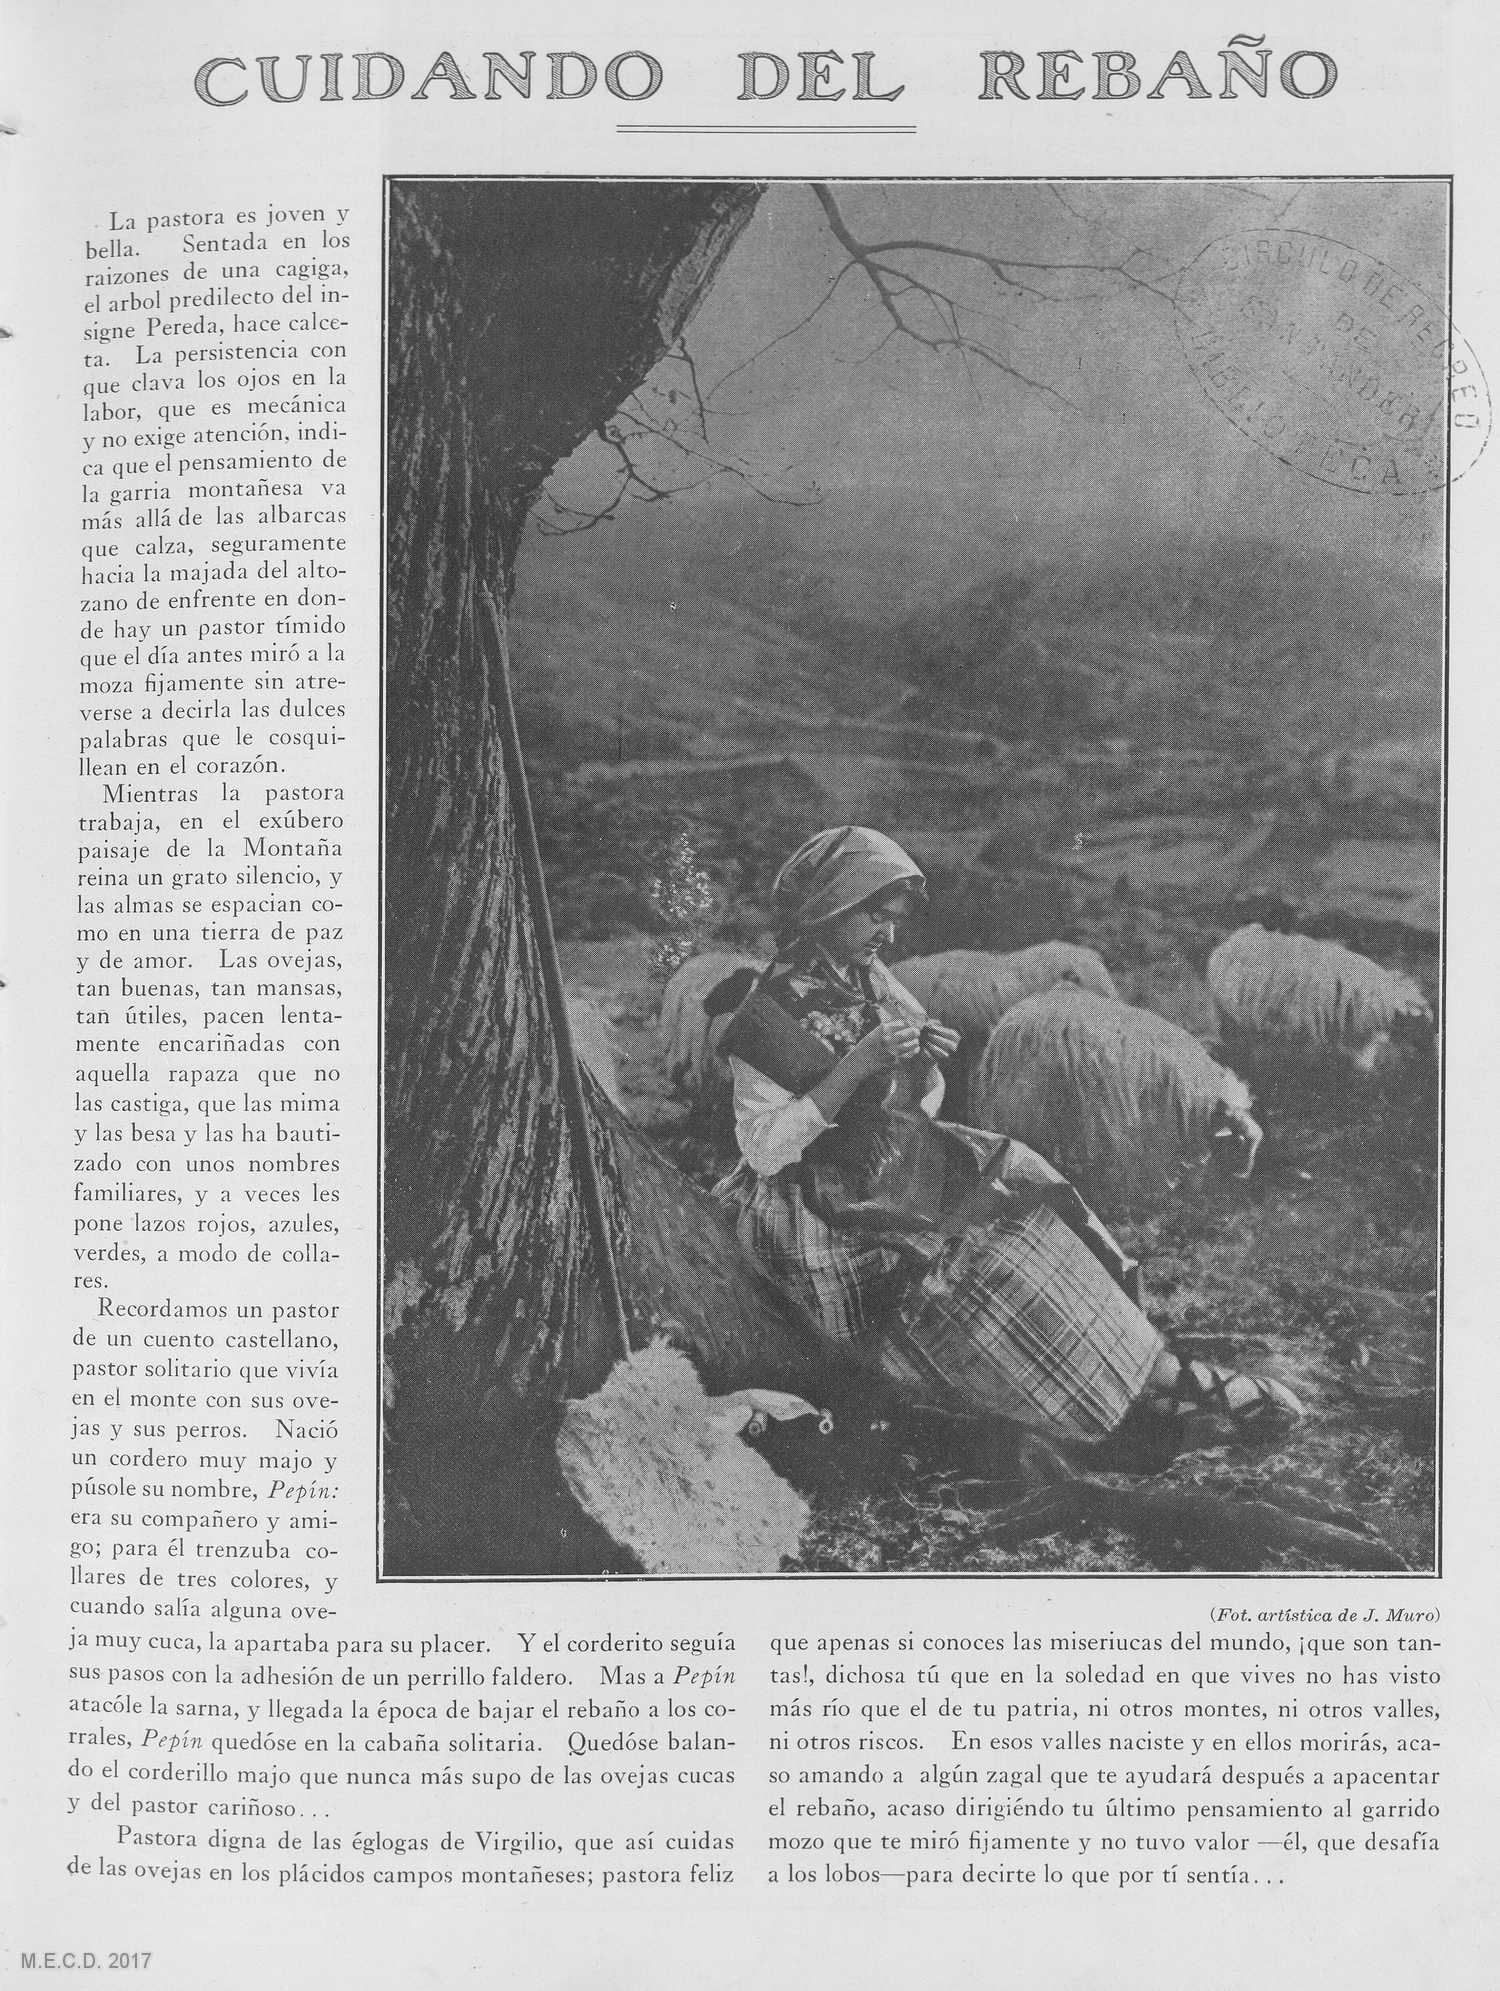 Biblioteca Virtual de Prensa Histórica > Colección iberoamericana > La  Montaña : revista semanal de la colonia montañesa: Año I Número 17 - 1916  abril 22 - Copia digital